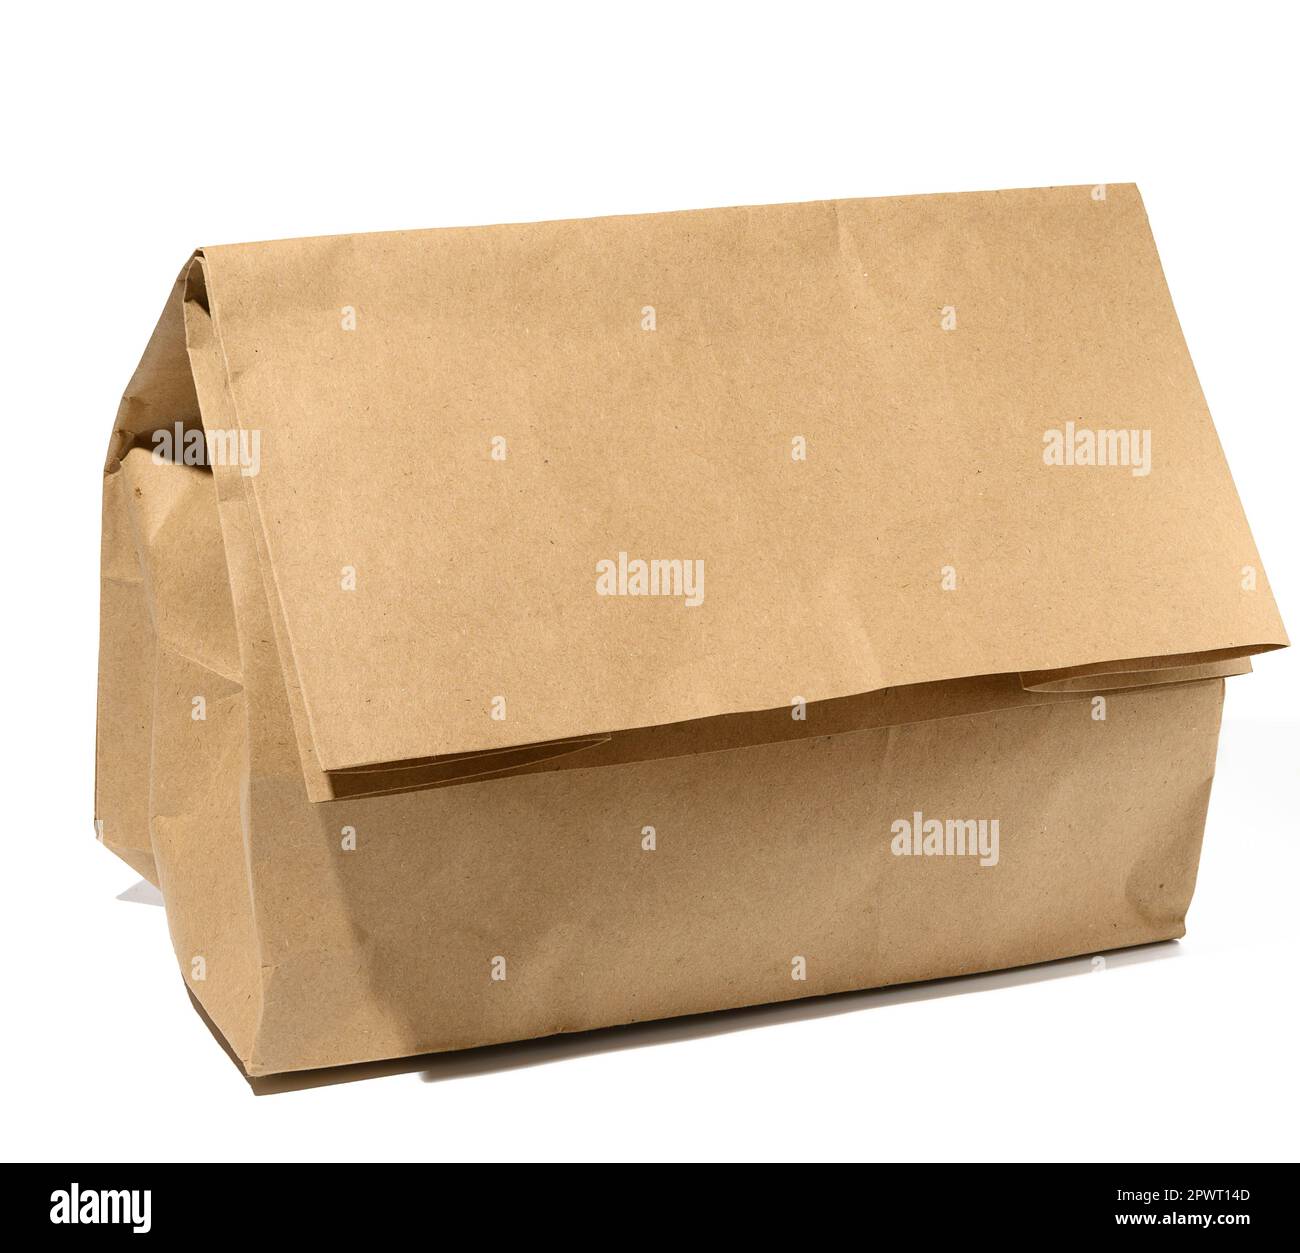 Sacchetto di carta marrone su fondo bianco, confezione per alimenti da asporto Foto Stock